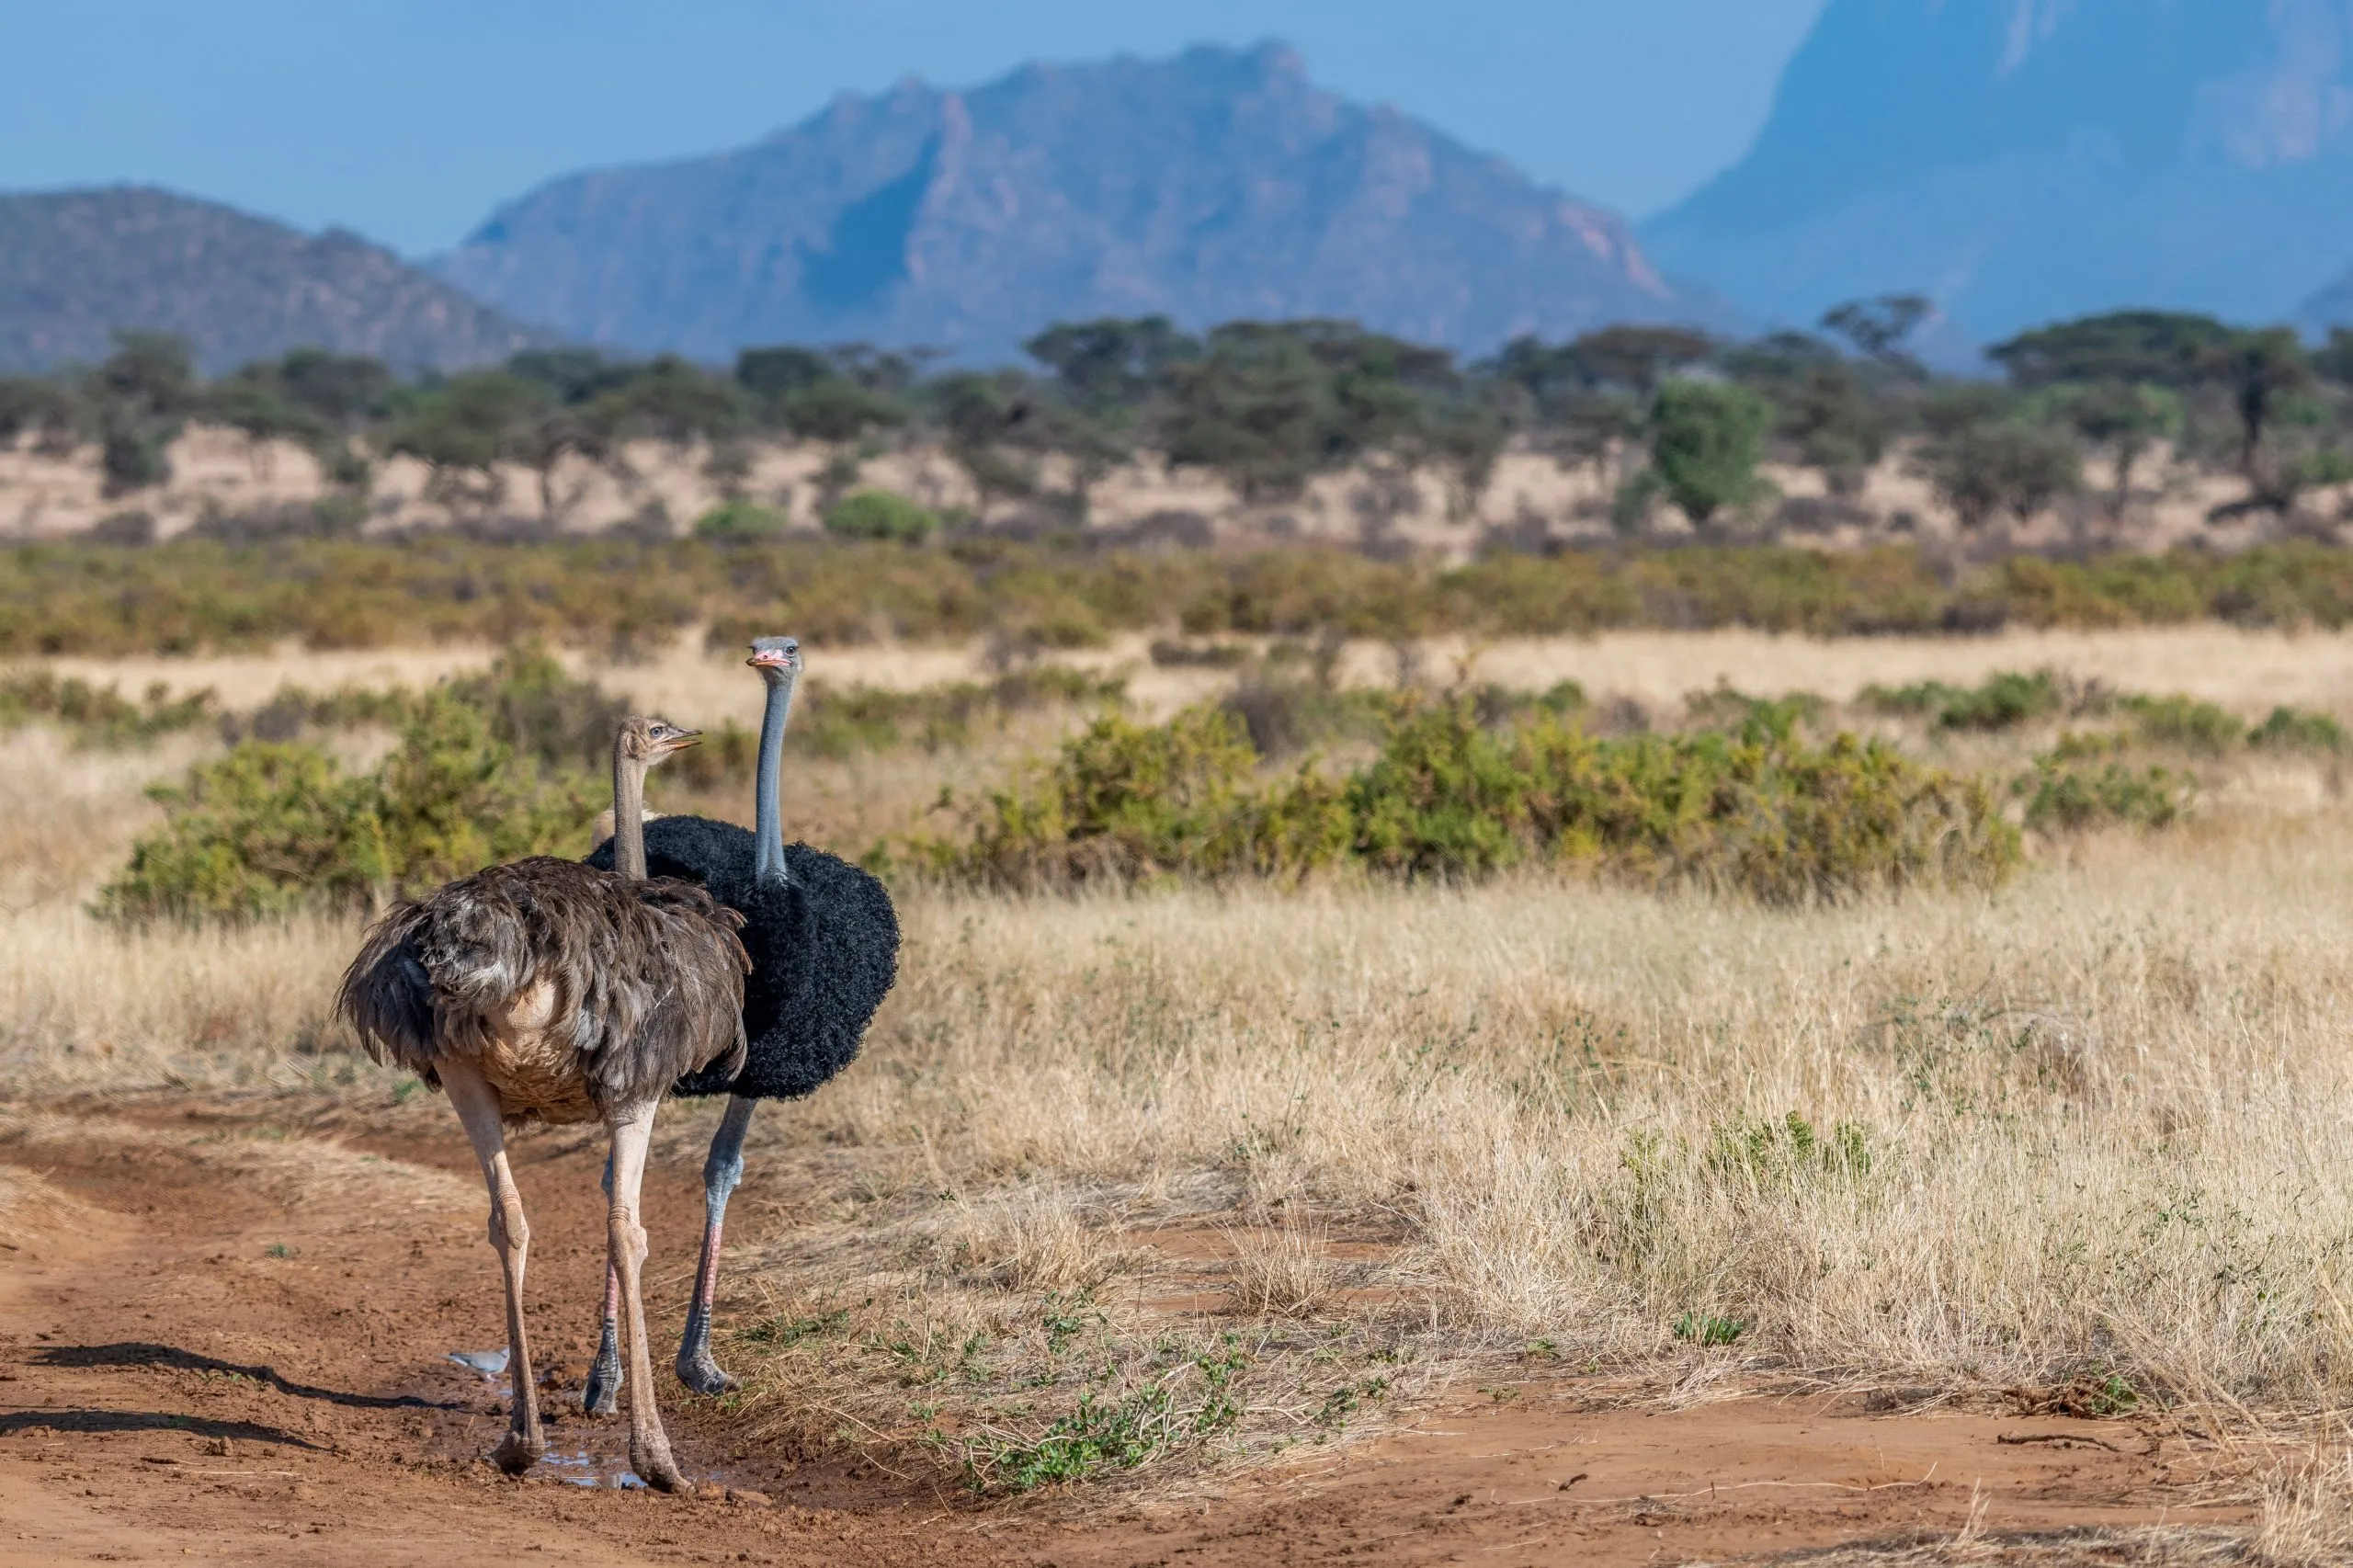 Halbtrockene Landschaft im Samburu National Reserve, Kenia. Seltene männliche und weibliche Somali Strauße im Vordergrund. Ein sich paarendes Paar. Die Hautfarbe an Hals und Schenkeln ist graublau. Riesiger flugunfähiger Vogel. Afrika.